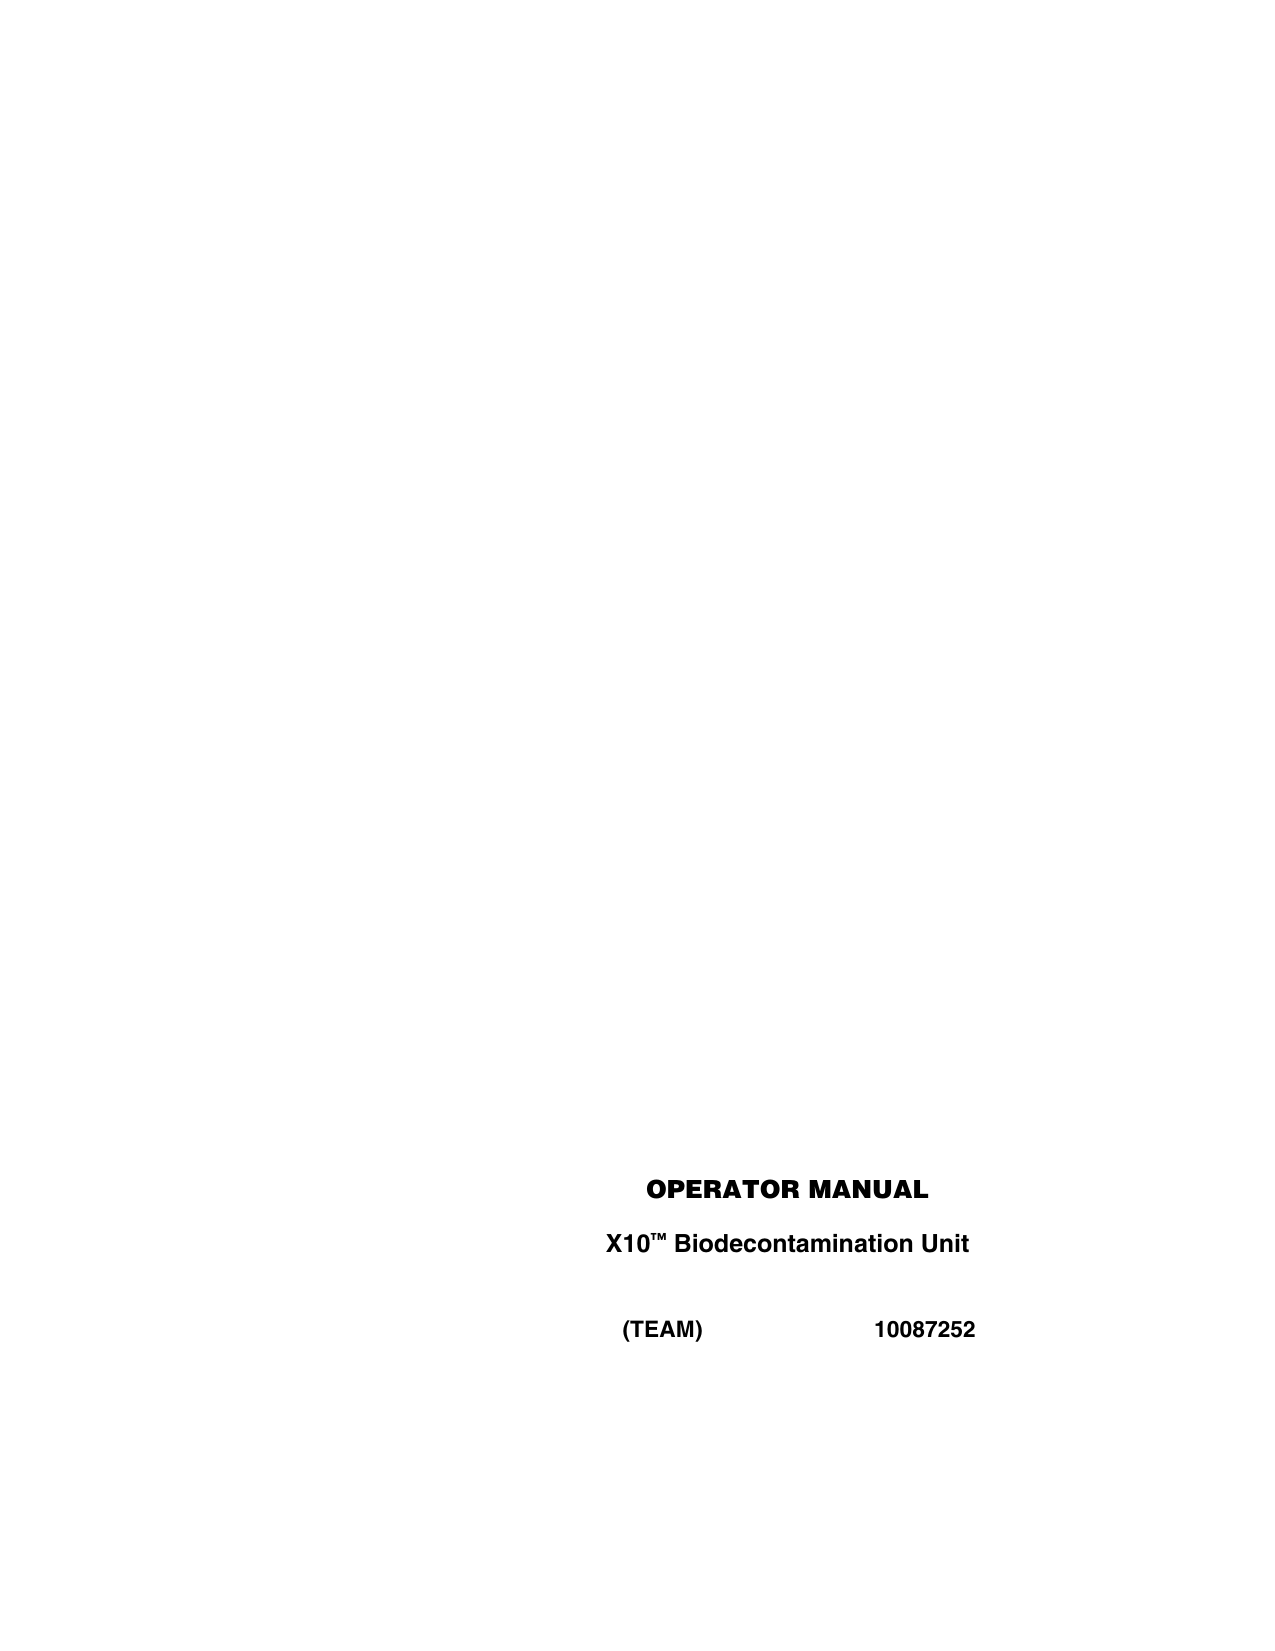 OPERATOR MANUALX10™ Biodecontamination Unit(TEAM) 10087252